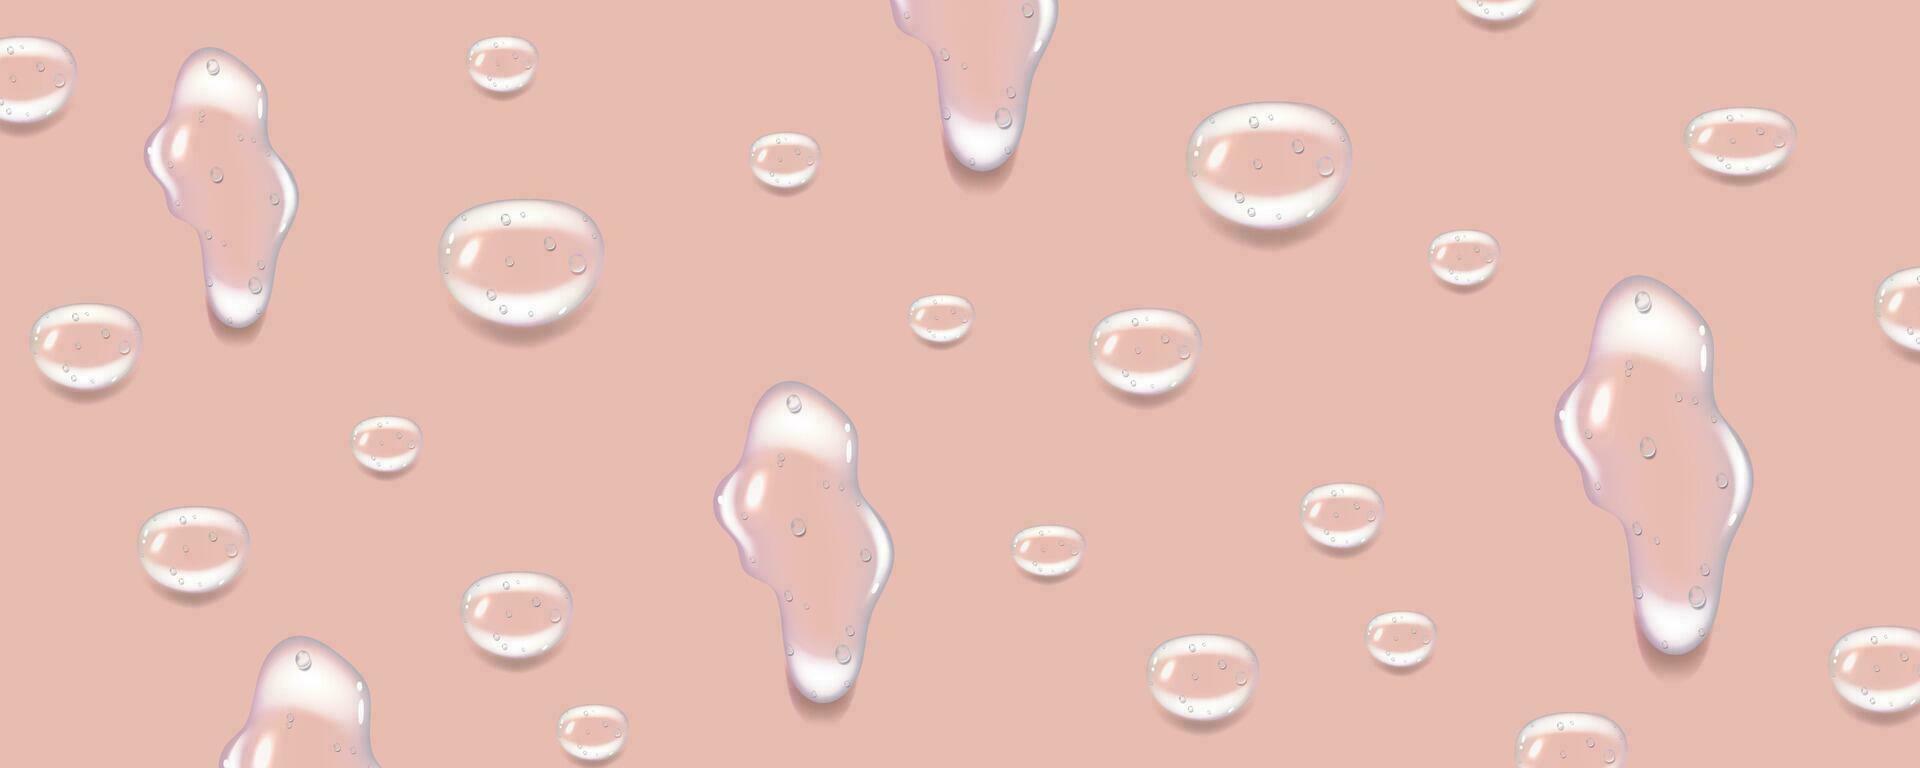 flytande rosa våt droppar av gel eller kollagen.spillt vattenpölar av kosmetisk serum eller vatten. runda rena swatch av väsen lotion eller gelé för hud vård.skönhet bakgrund med olja droppar. vektor